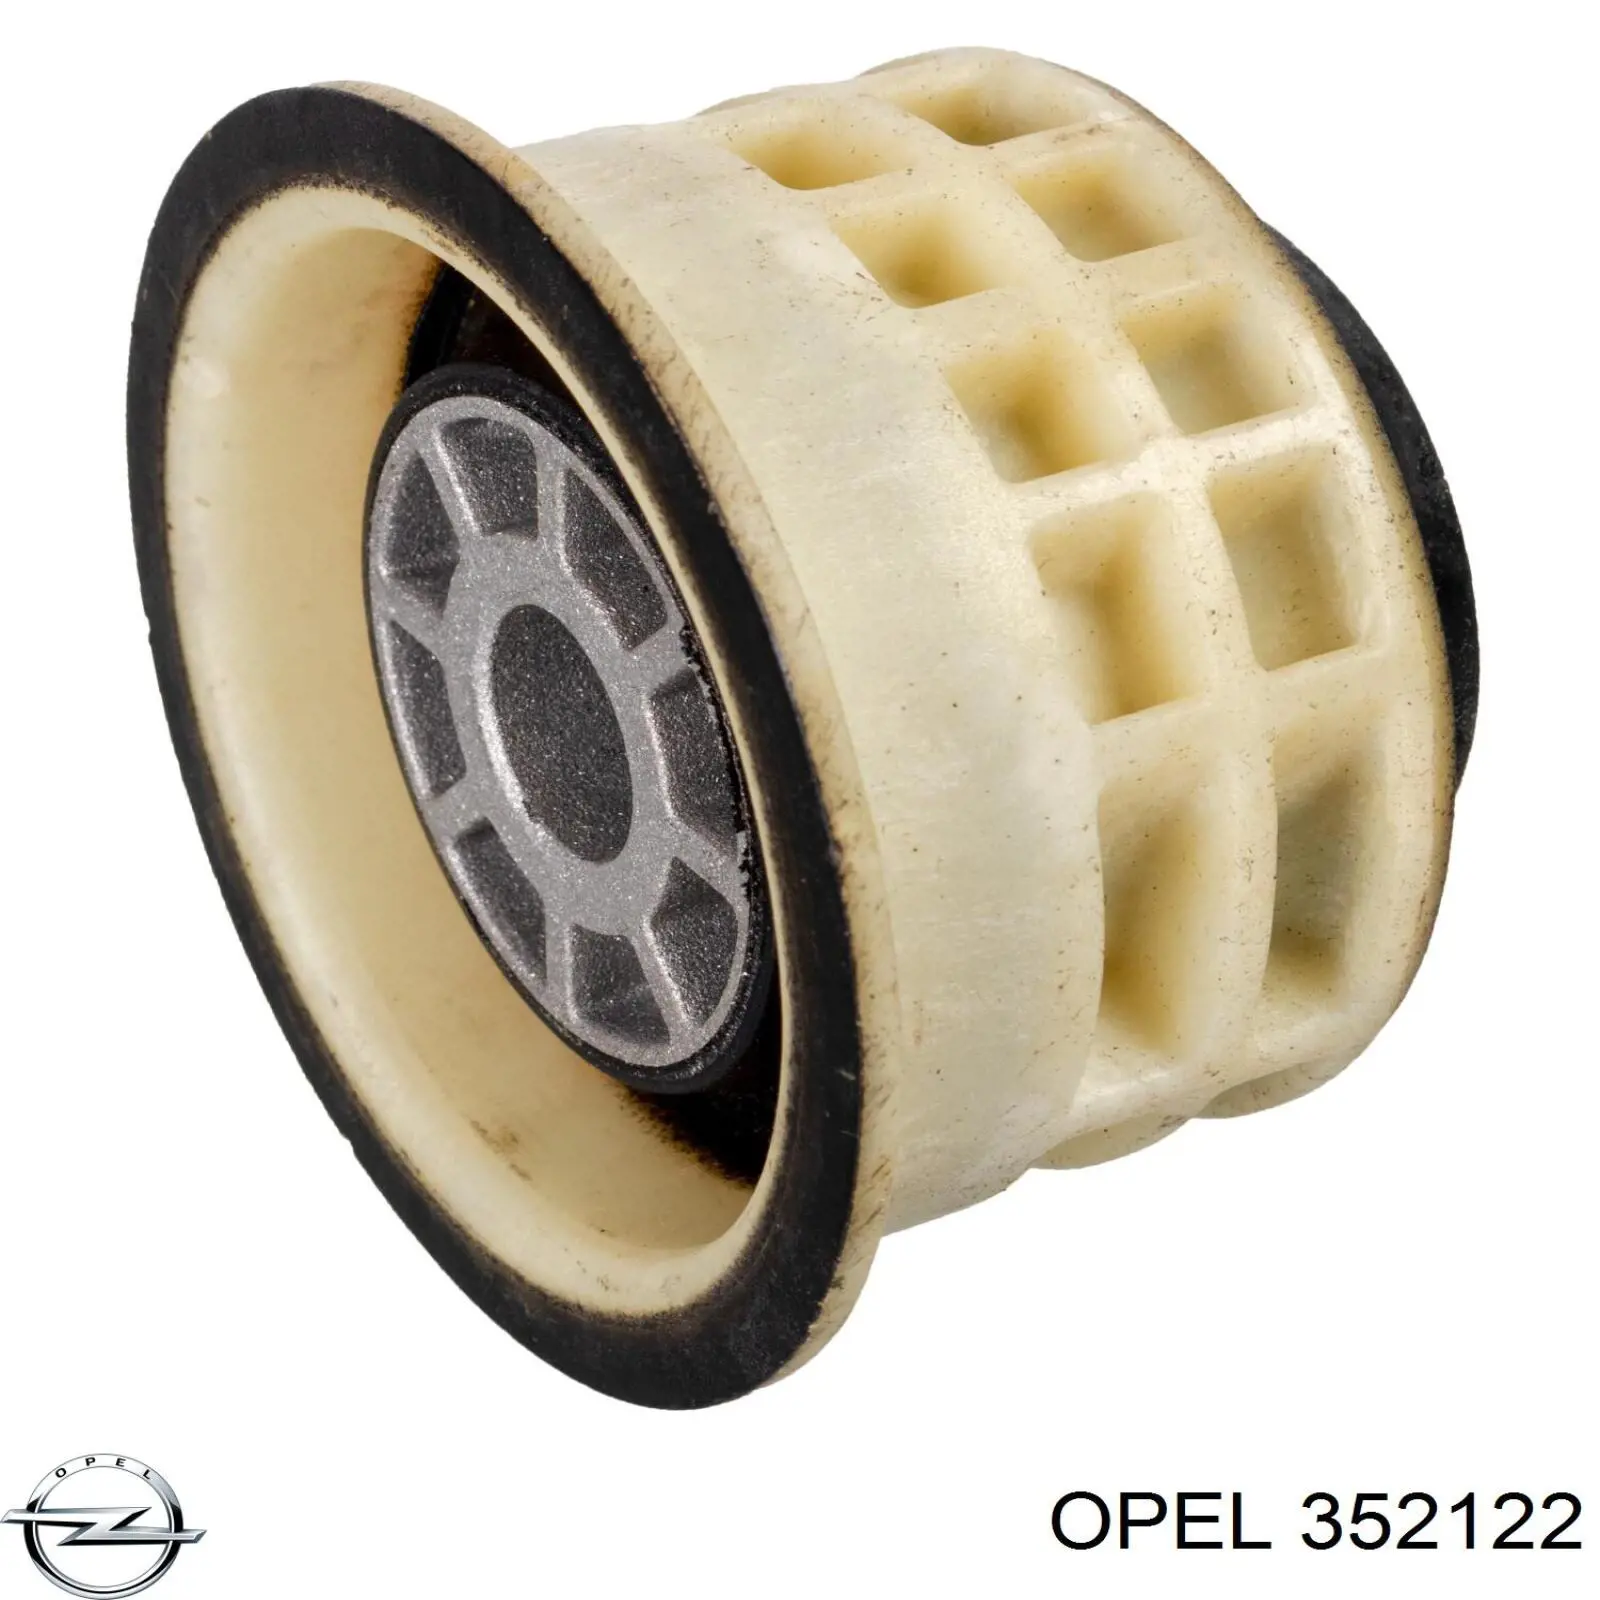 352122 Opel bloqueo silencioso (almohada De La Viga Delantera (Bastidor Auxiliar))